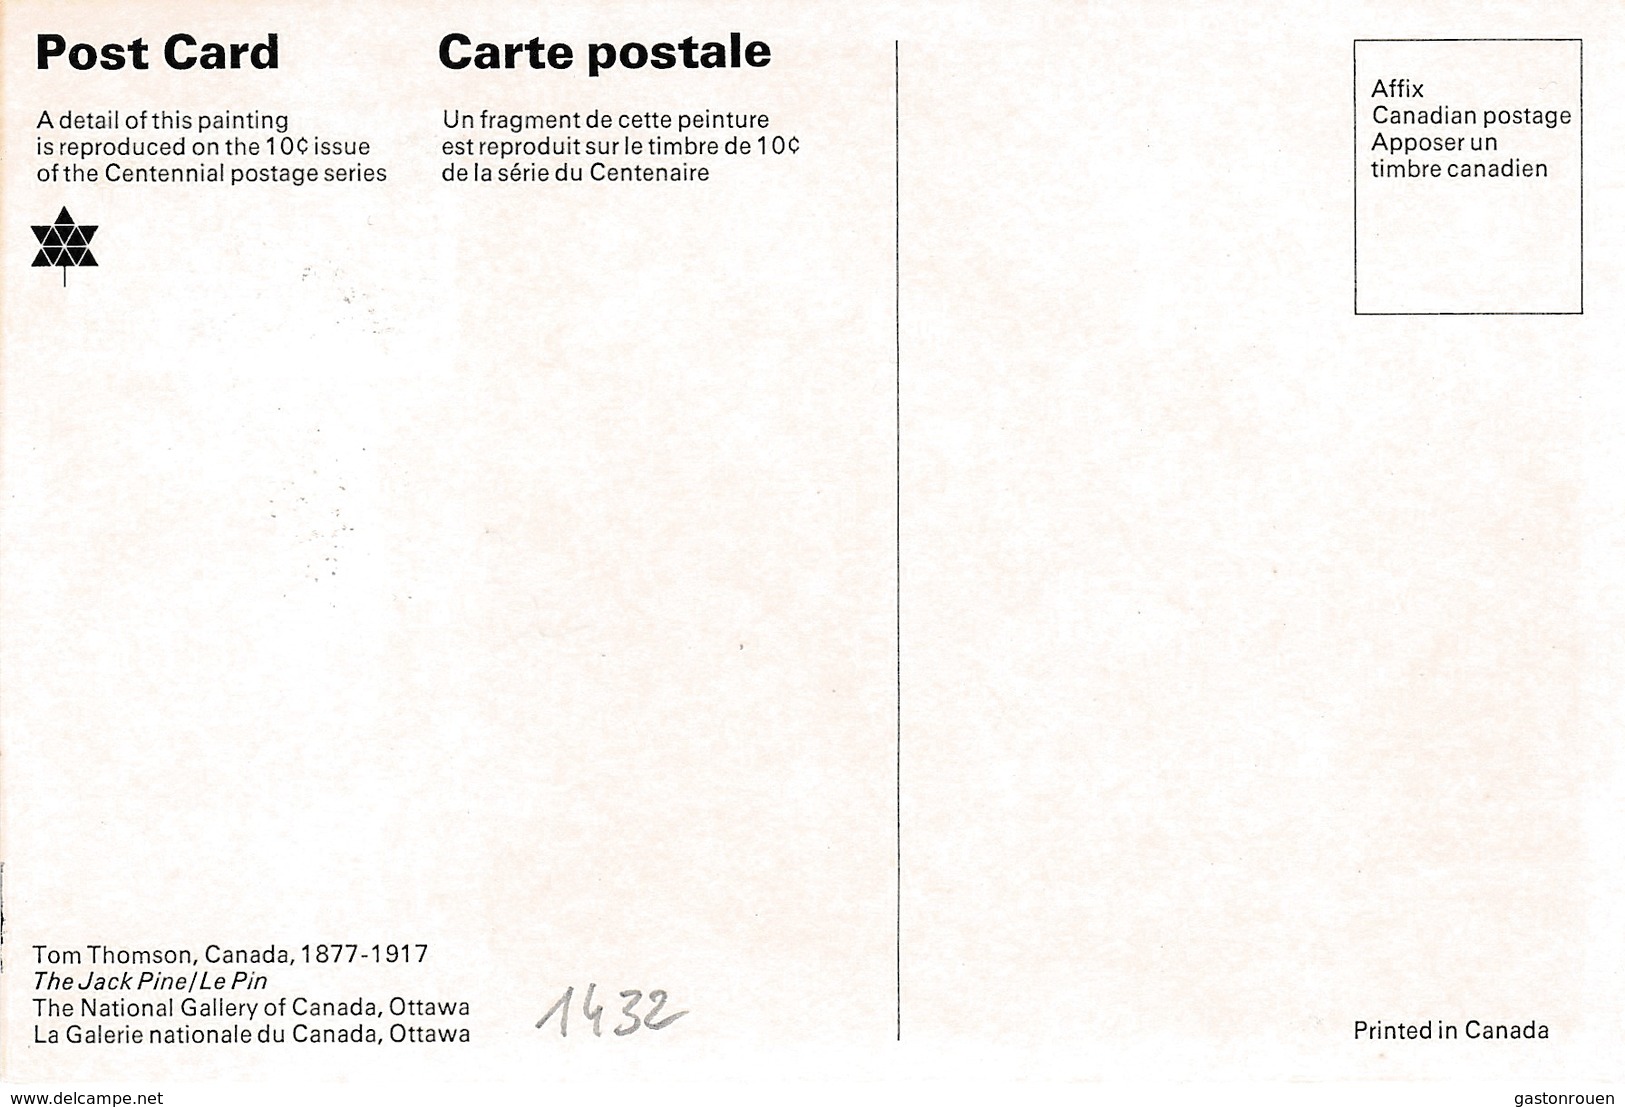 Carte Maximum Peinture Canada 1967 Tom Thomson - Tarjetas – Máxima